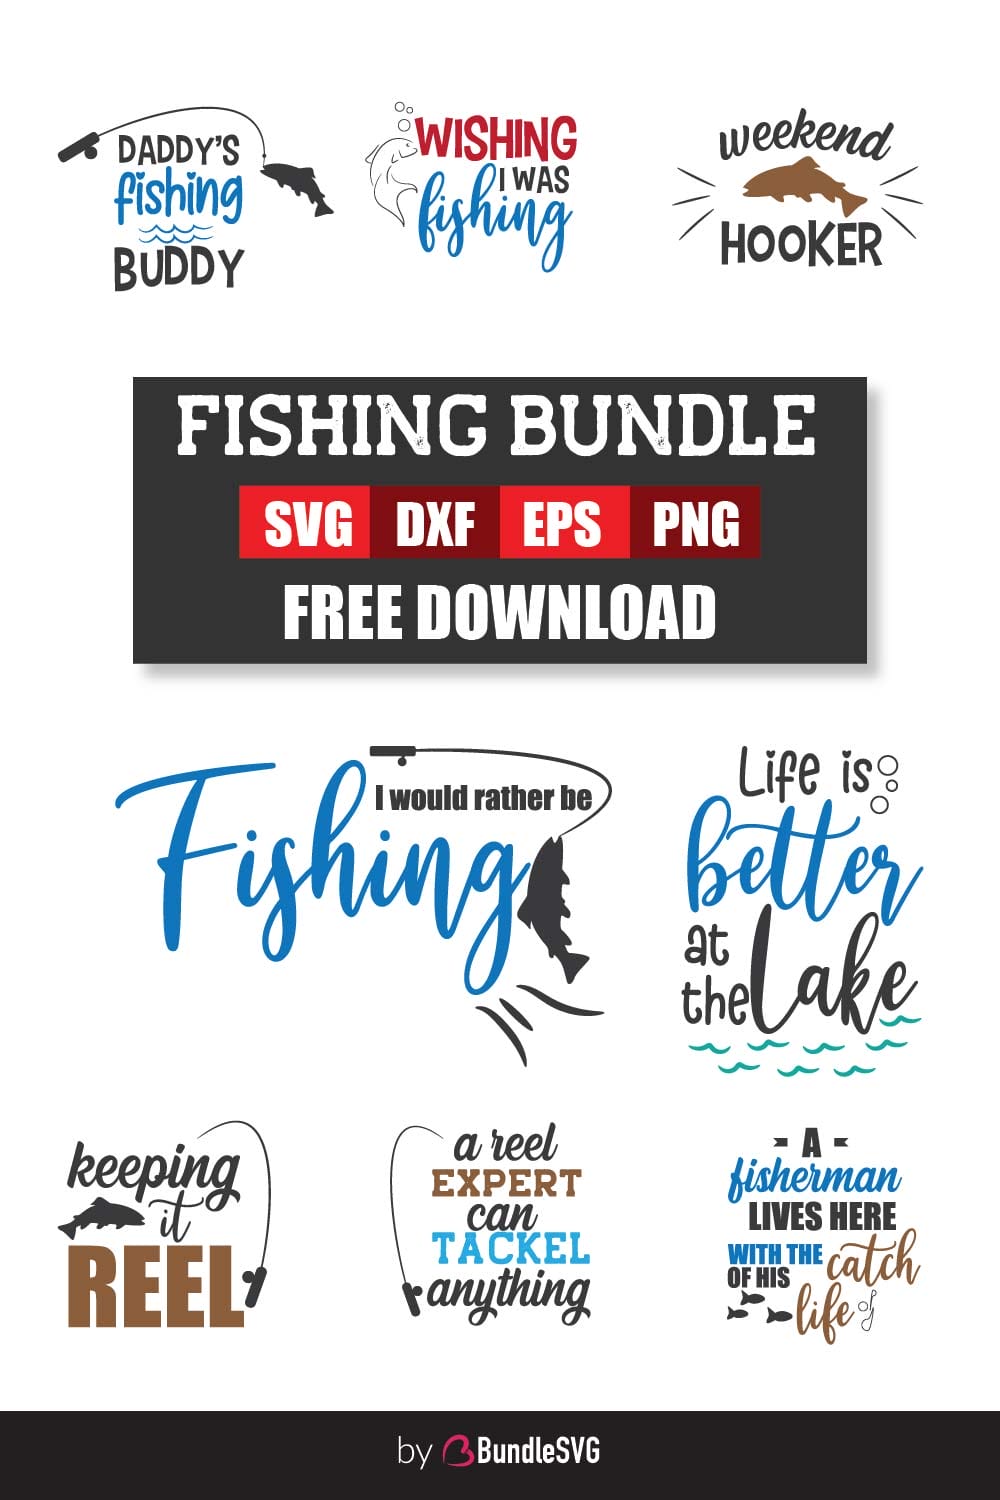 Fishing Bundle SVG Free